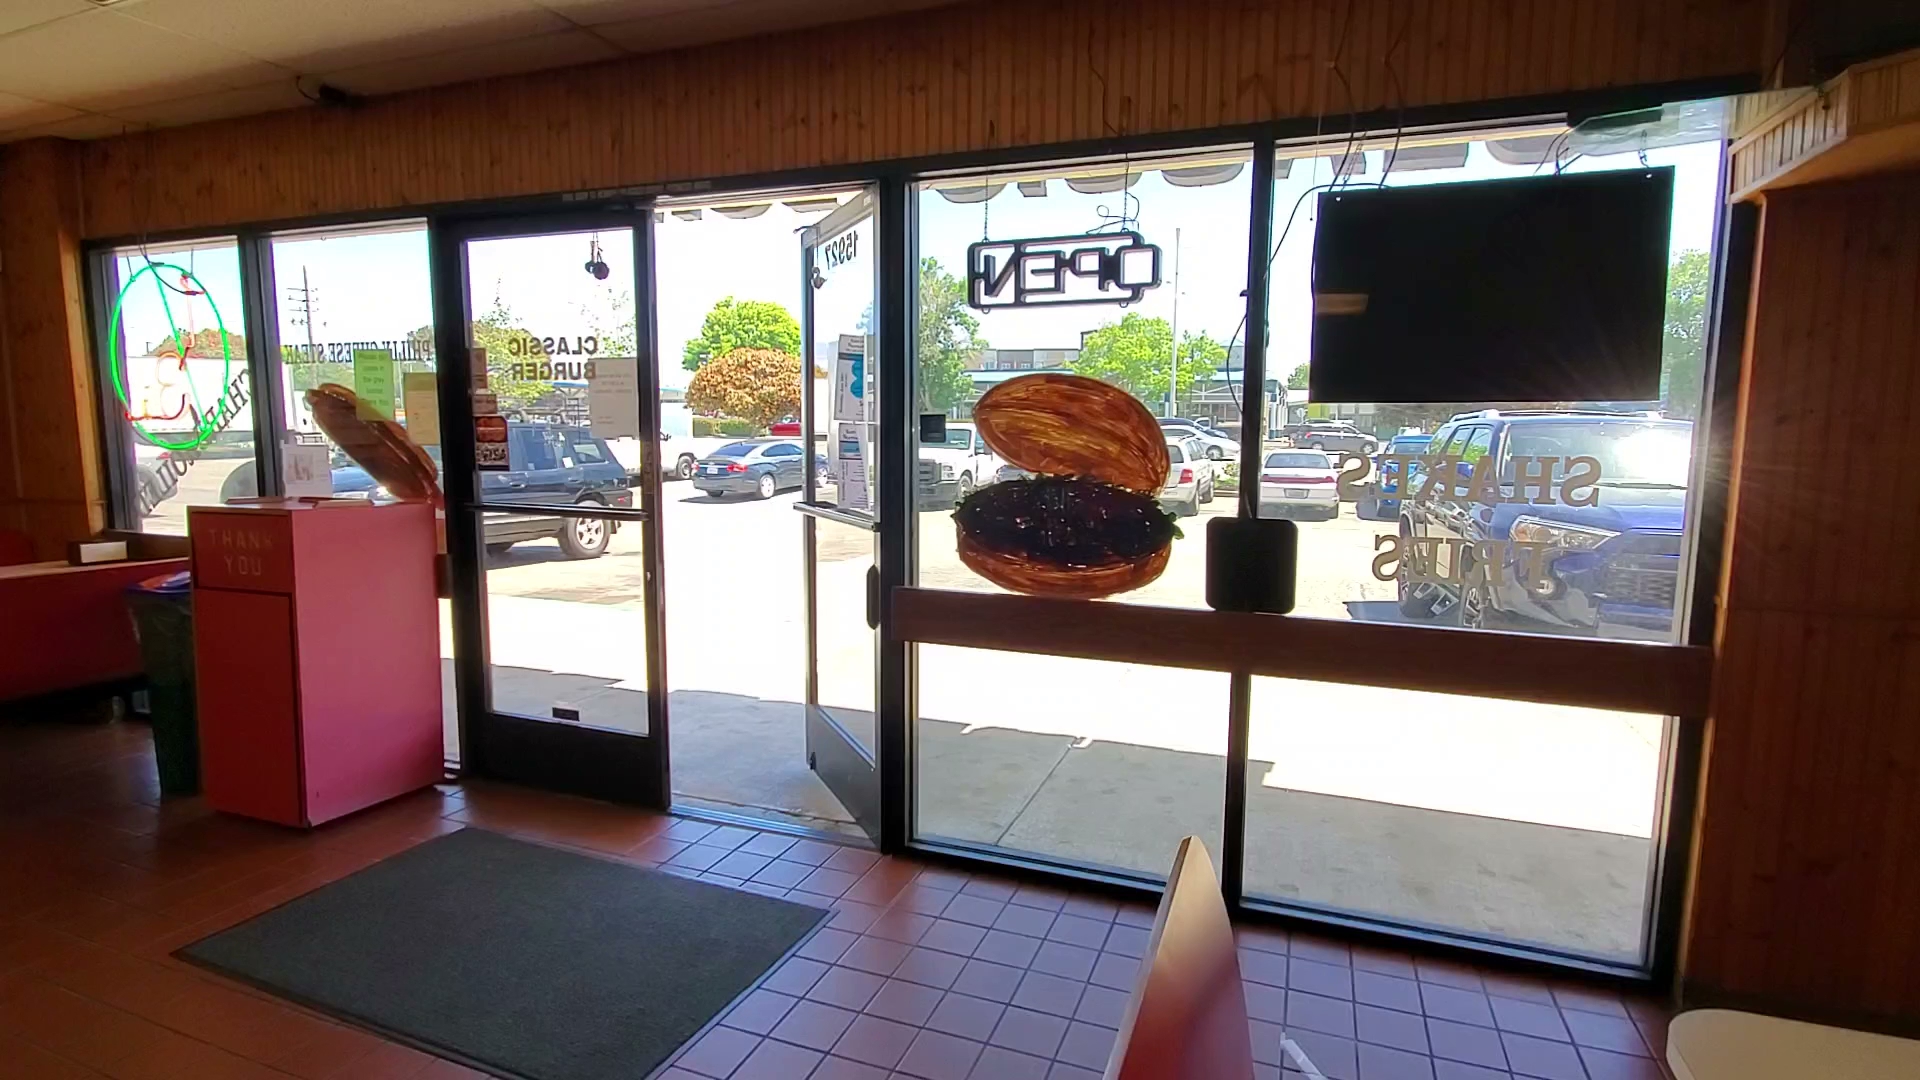 Classic Burger